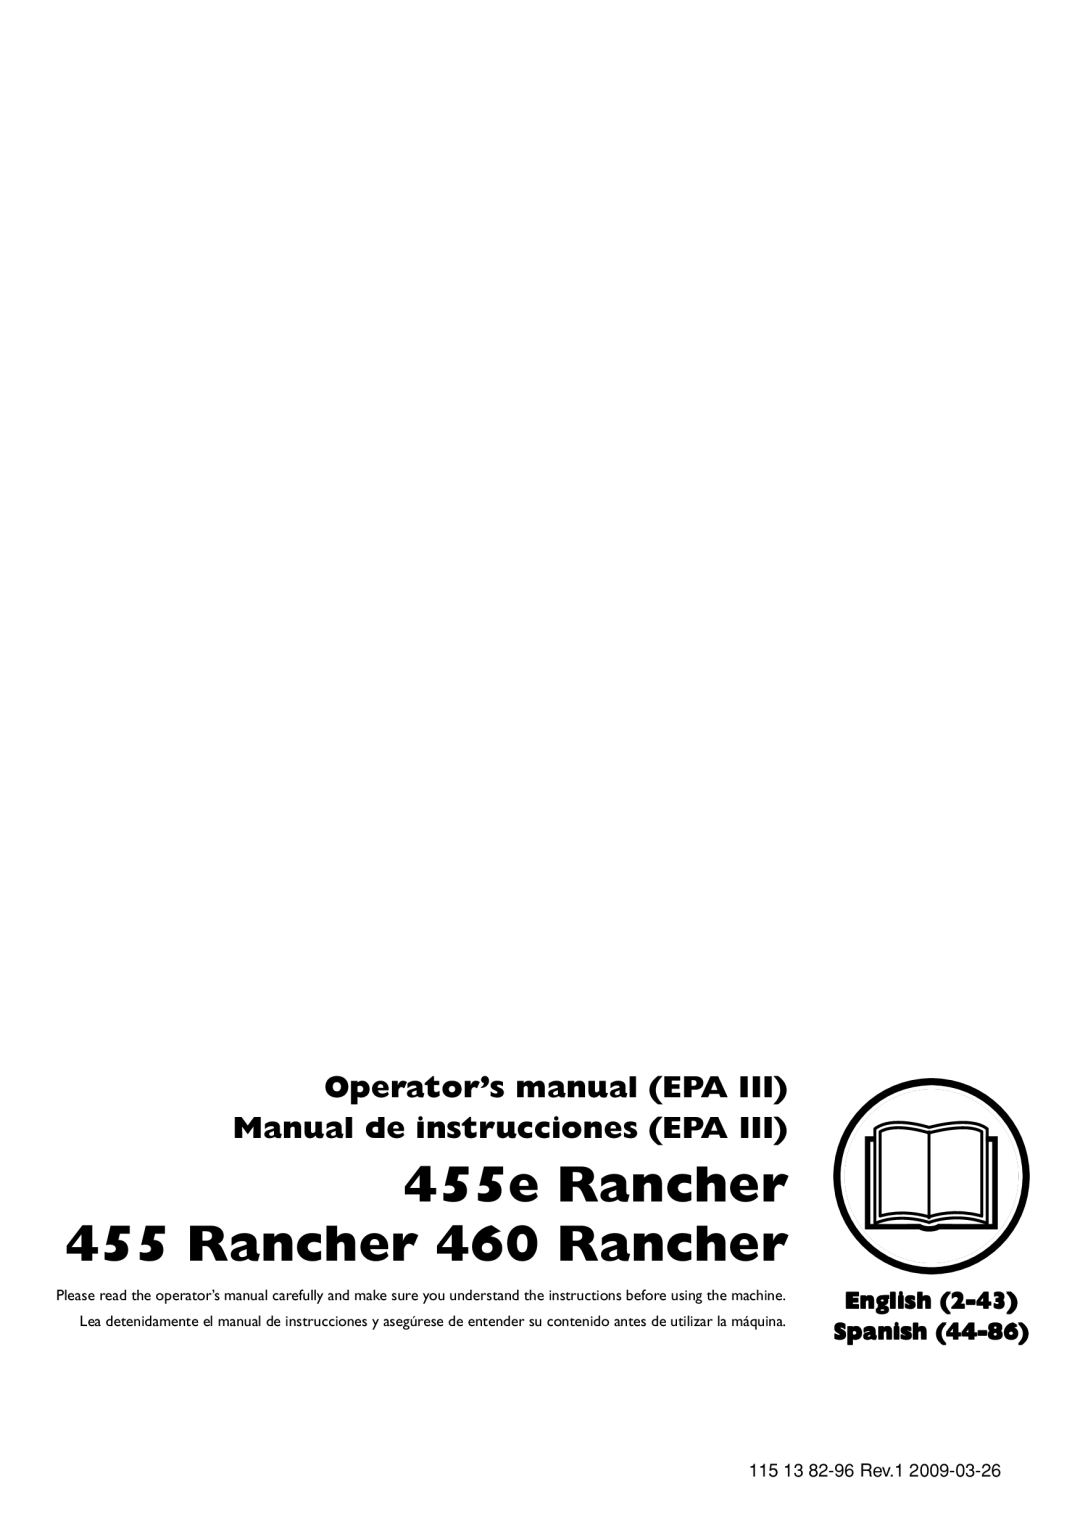 Husqvarna 115 13 82-96 manual 455e Rancher 455 Rancher 460 Rancher, Operator’s manual EPA III Manual de instrucciones EPA 